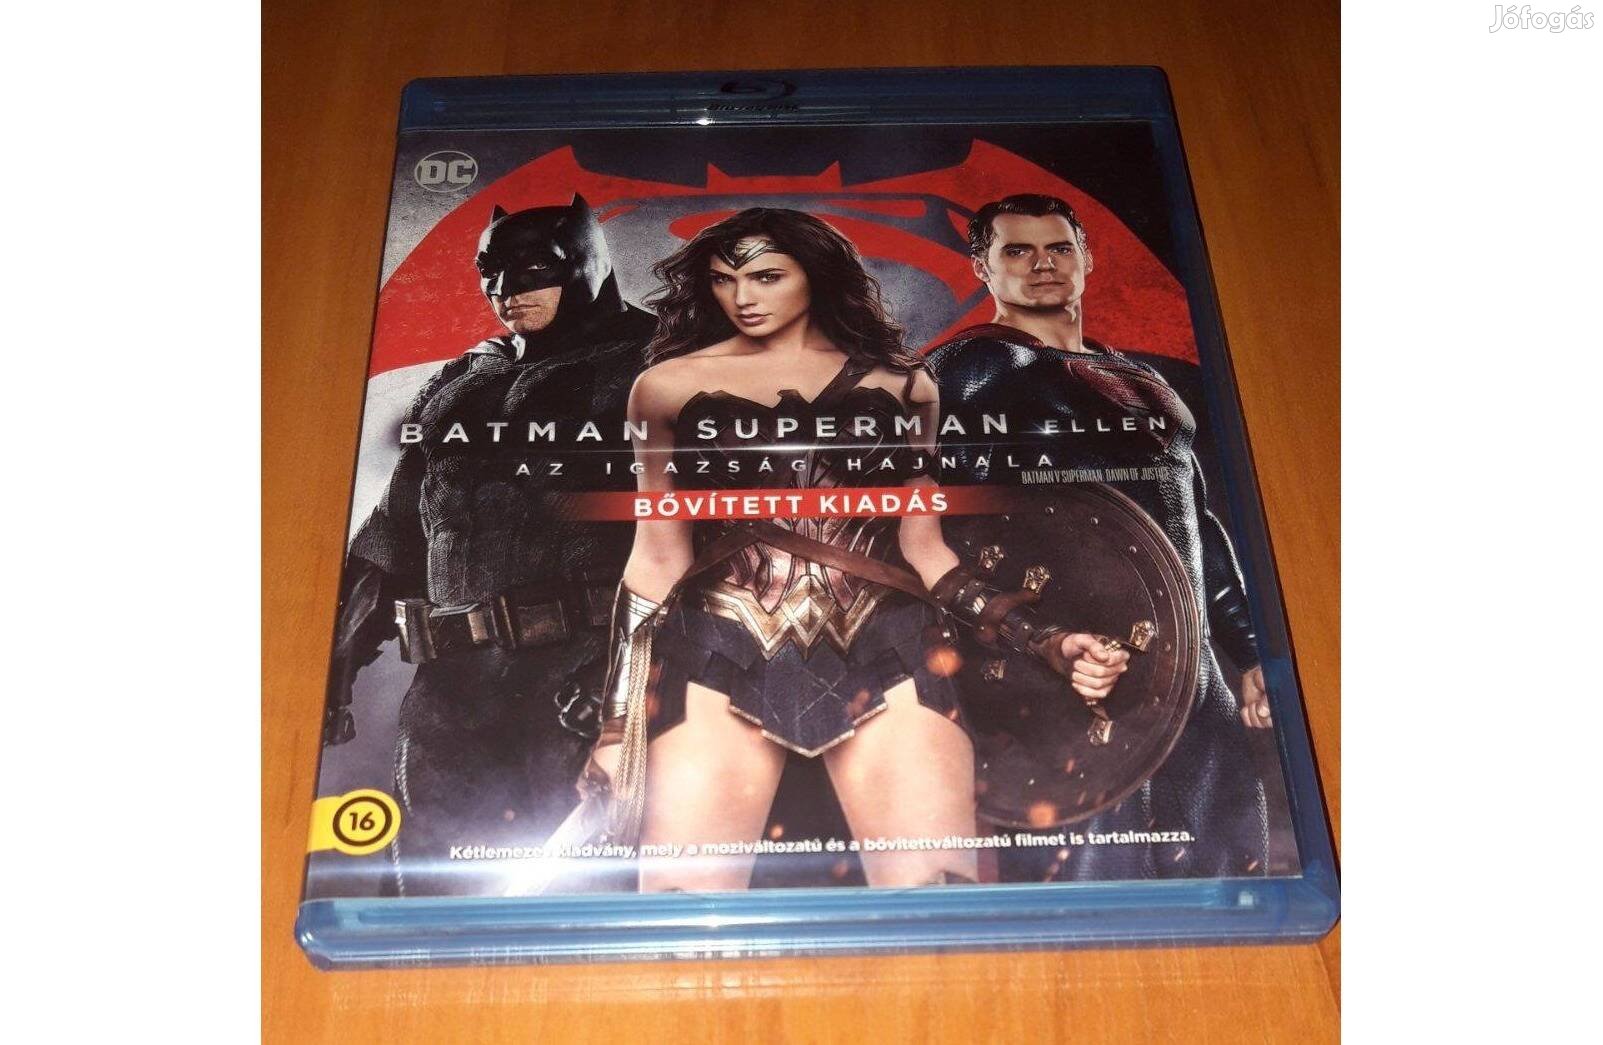 Batman Superman ellen bővitett kiadás Blu-ray